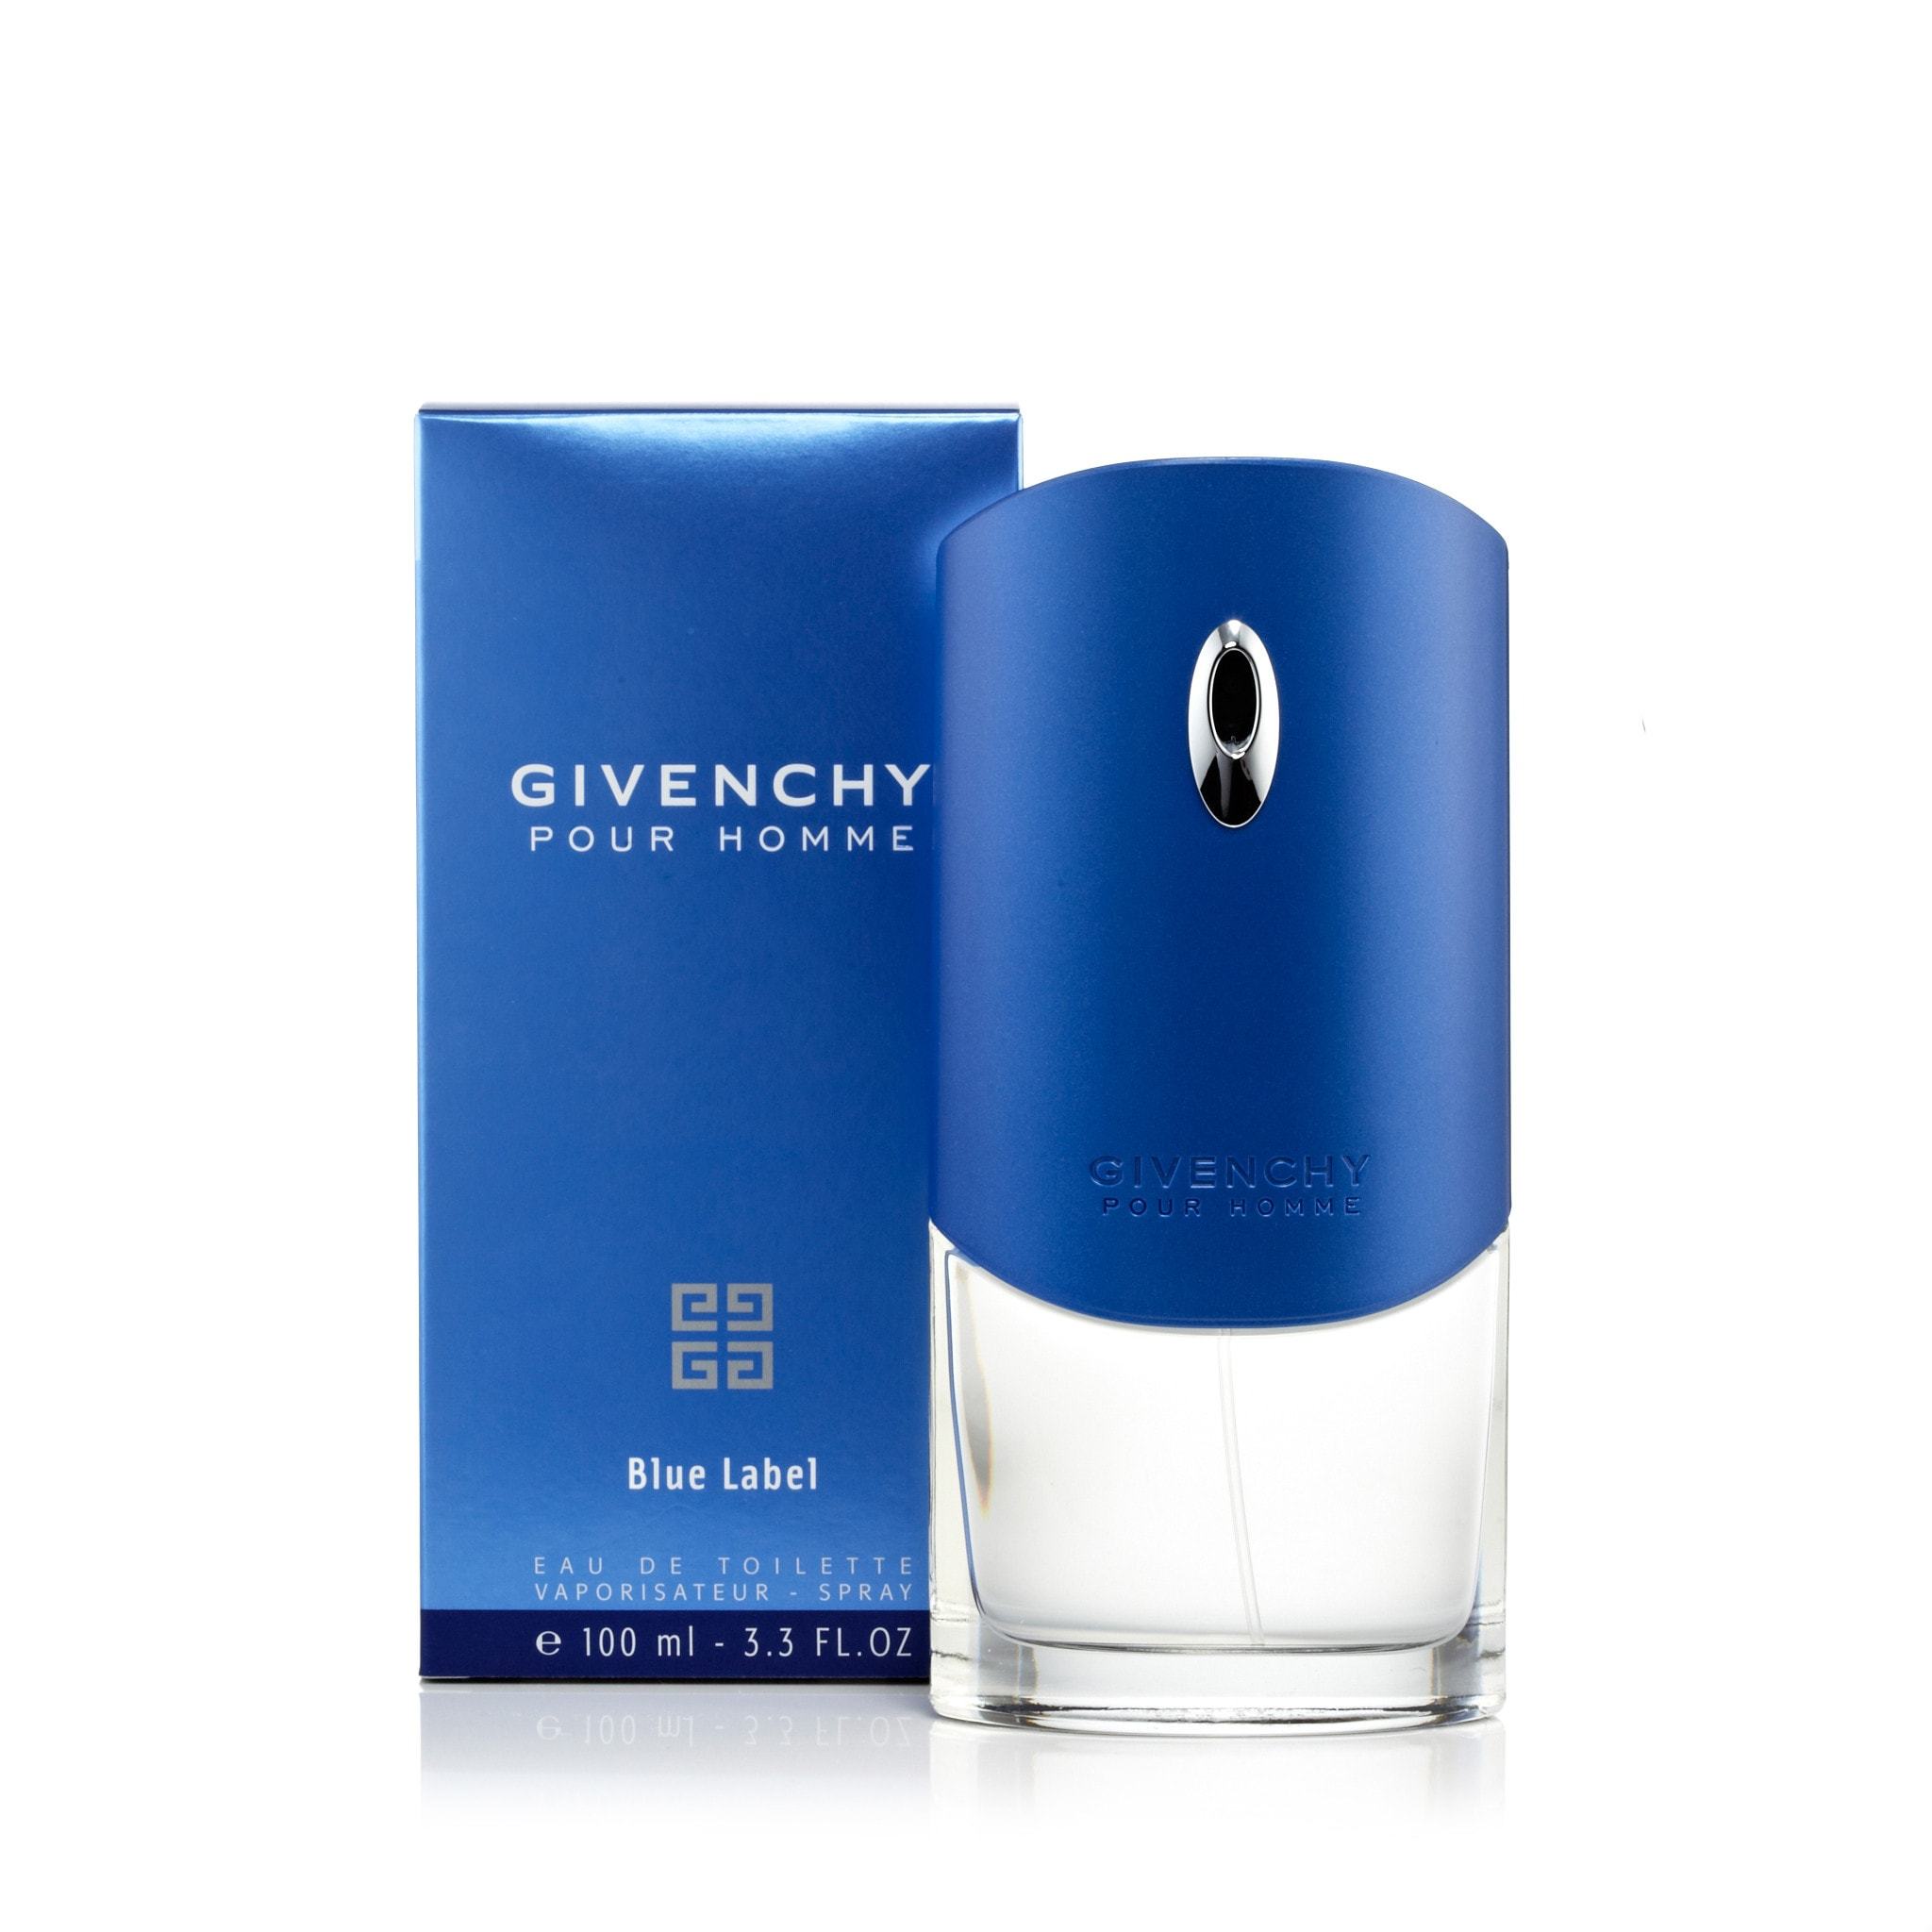 Givenchy Blue Label Cologne Eau De Toilette by Givenchy